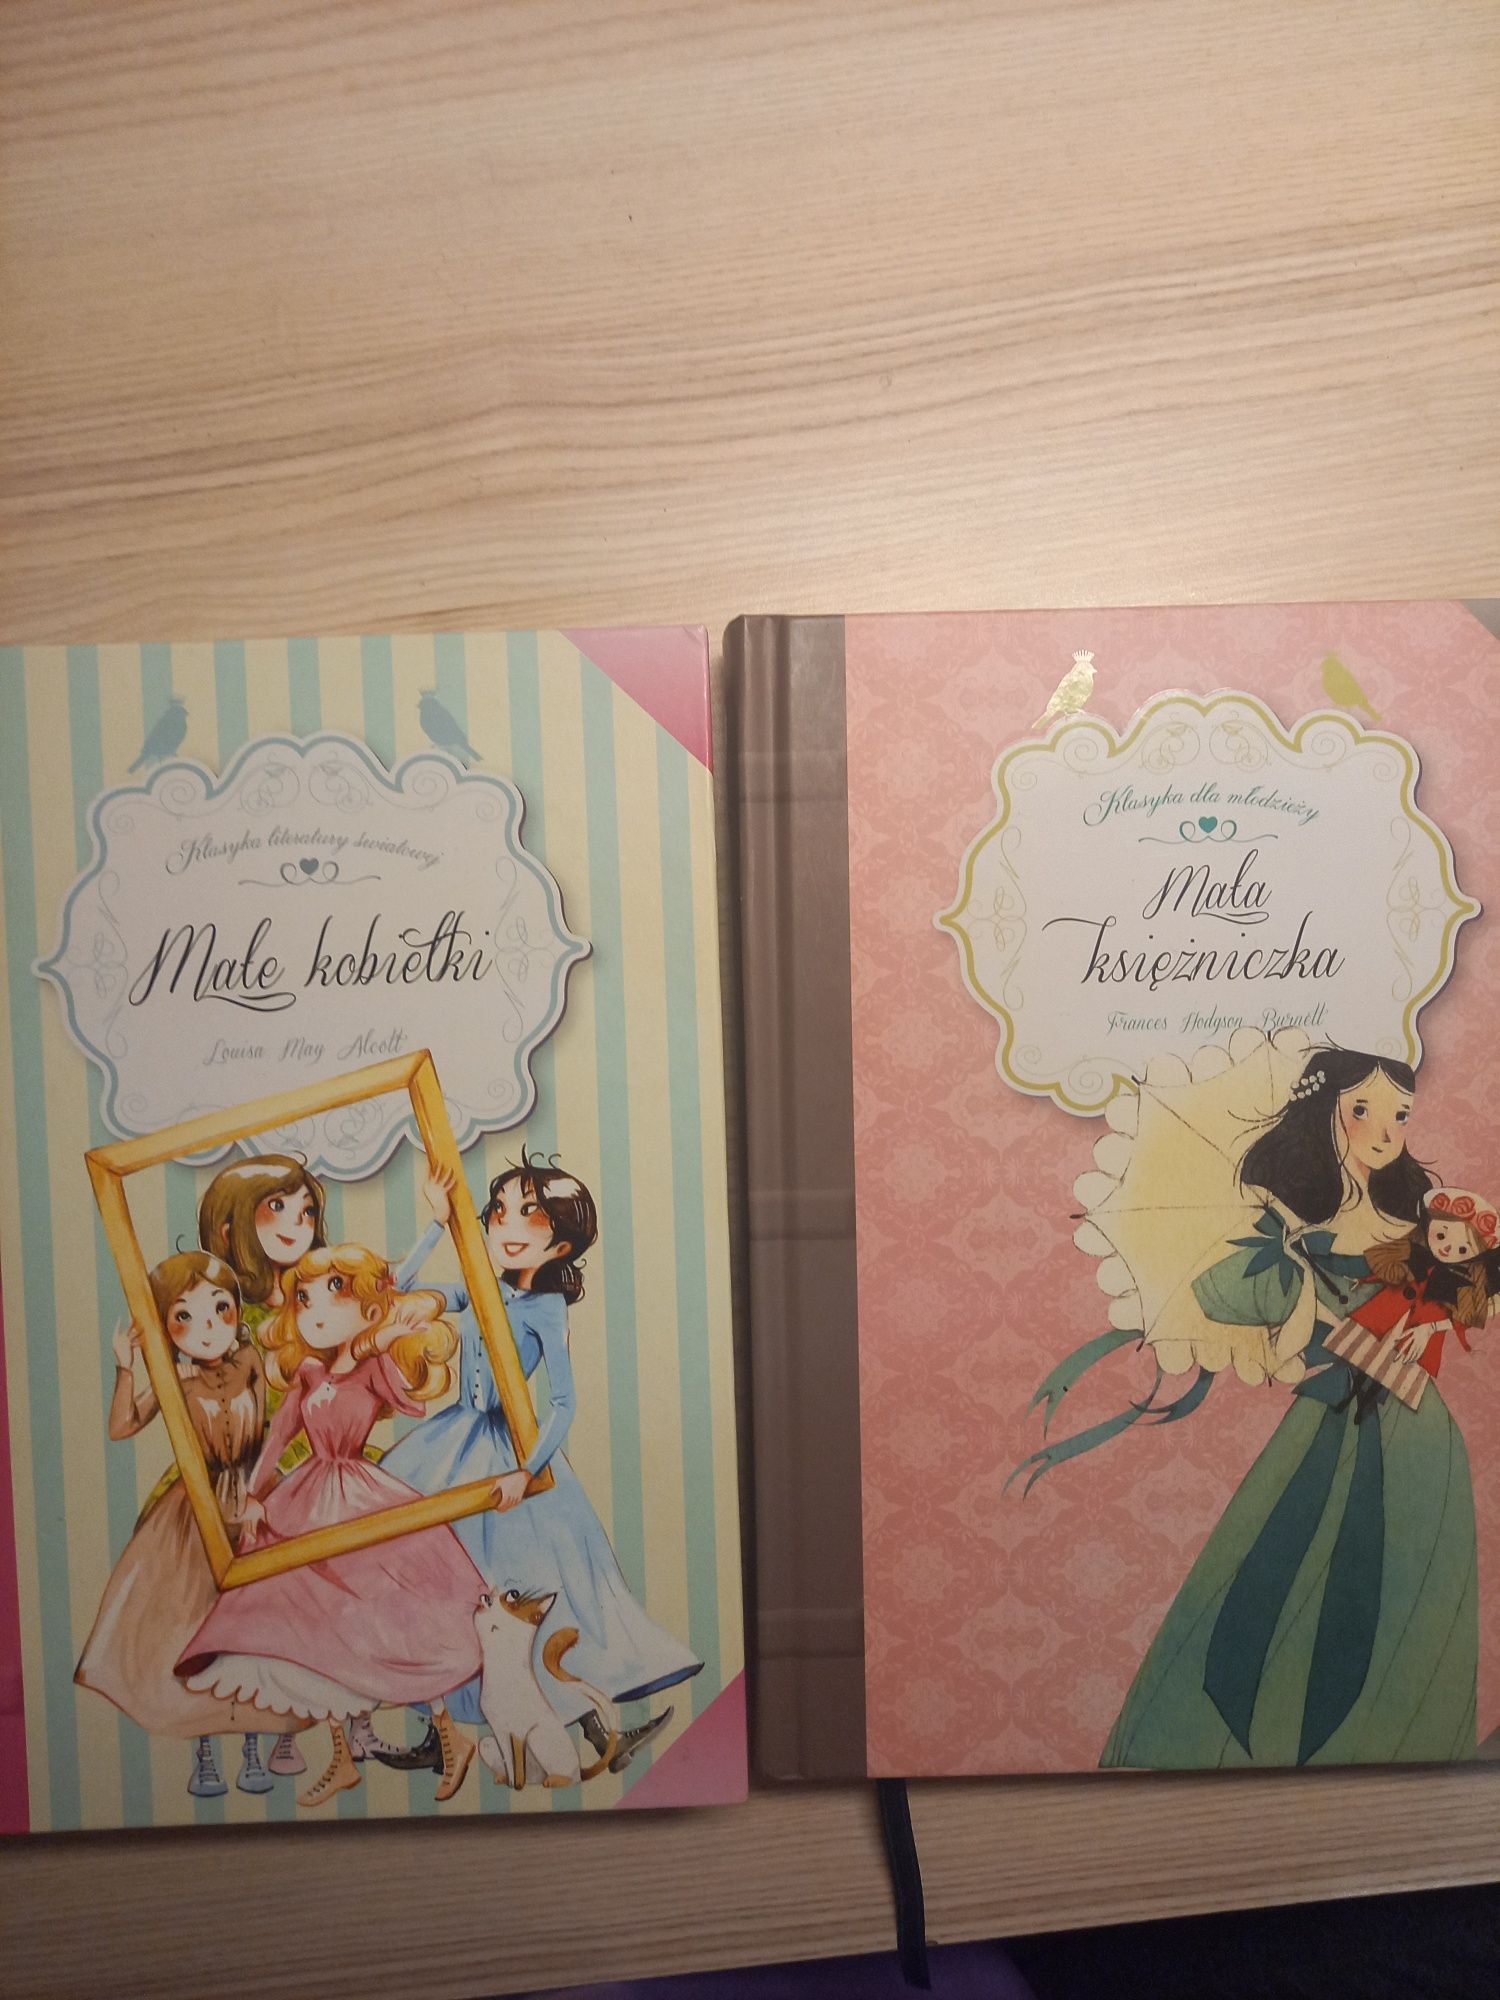 Książki: "Małe kobietki" i "Mała księżniczka"